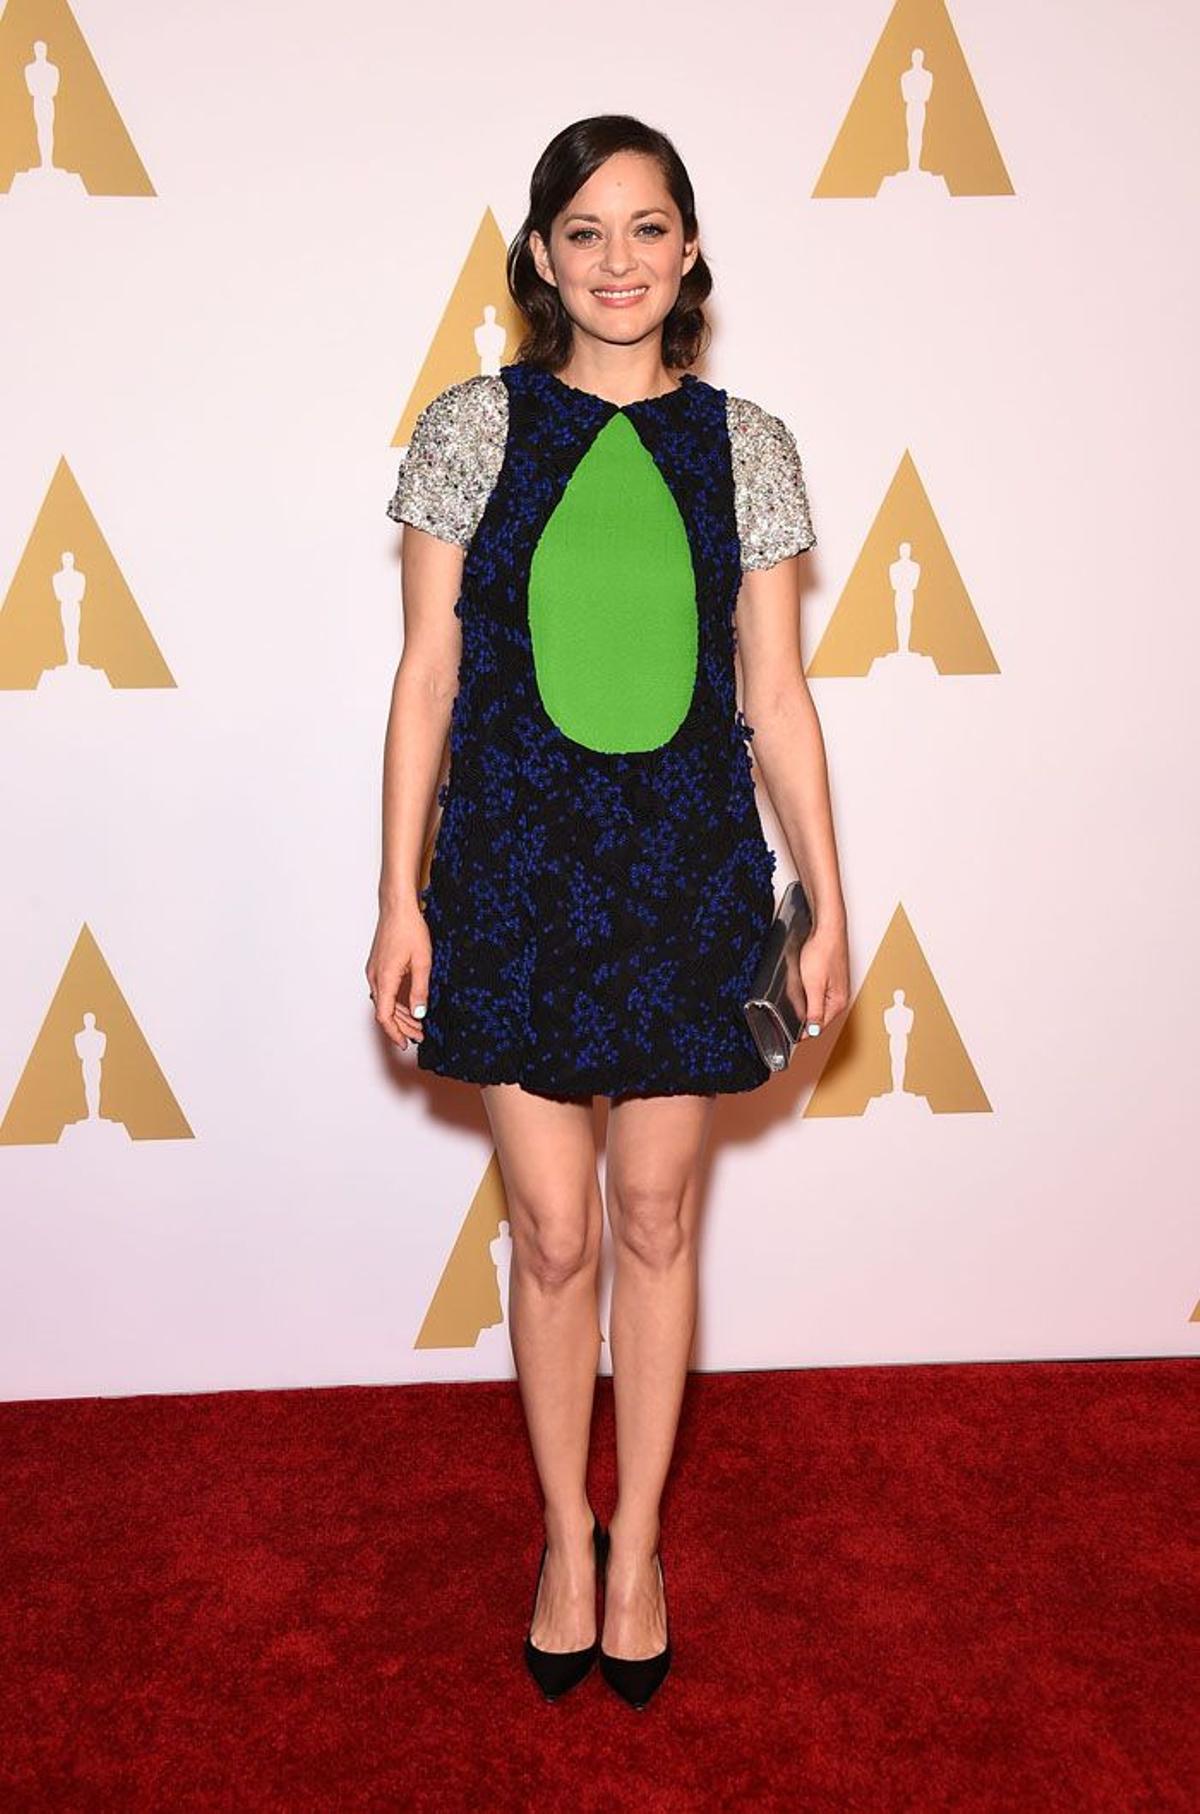 Almuerzo de los nominados Oscar 2015: Marion Cotillard